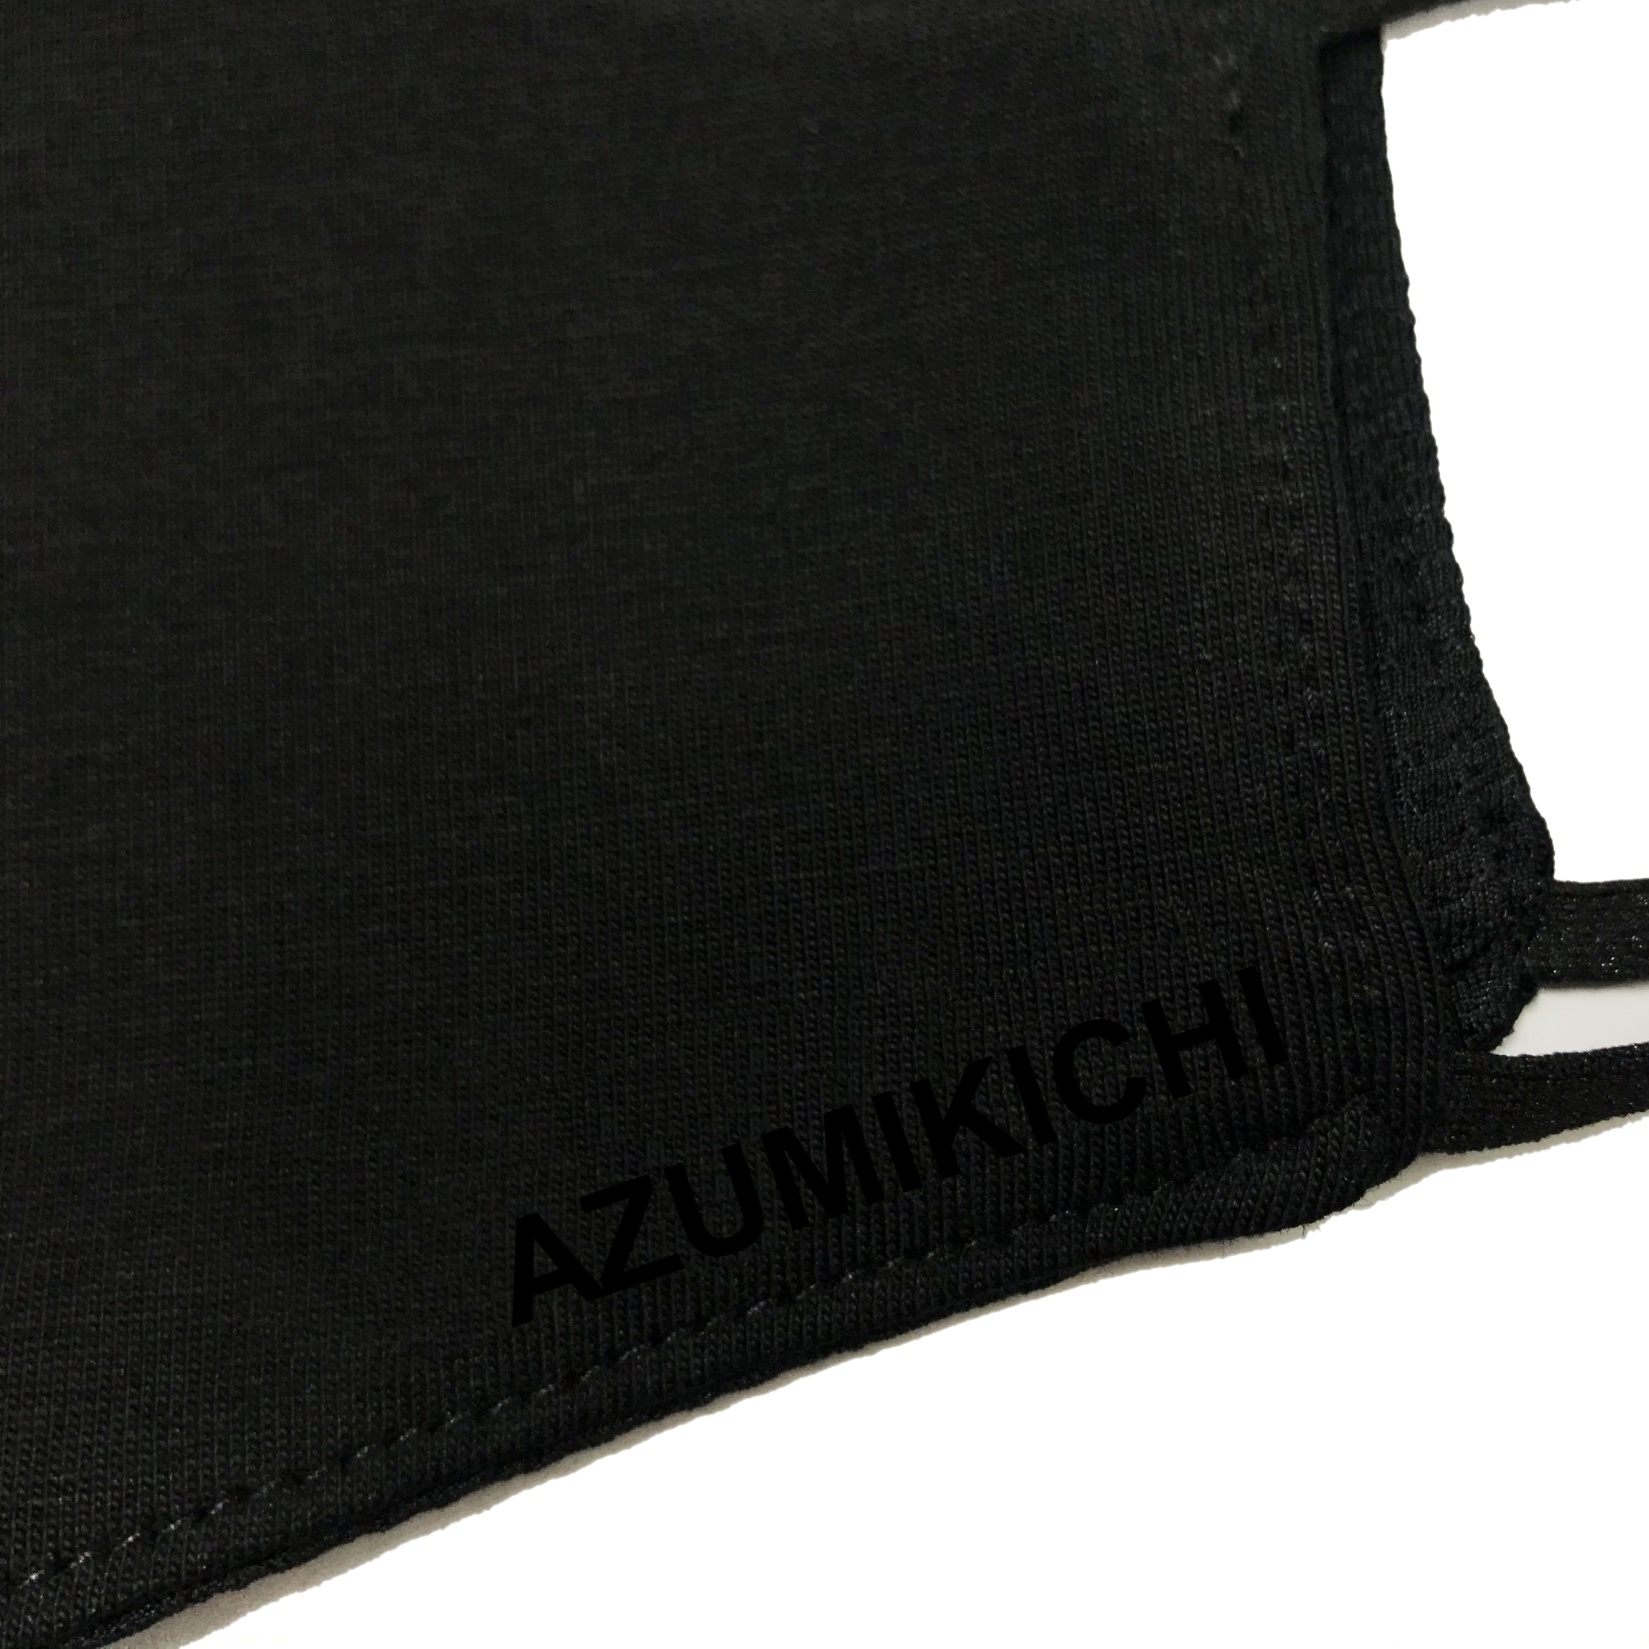 Khẩu trang vải Azumikichi màu đen, khẩu trang thời trang cao cấp sang trọng